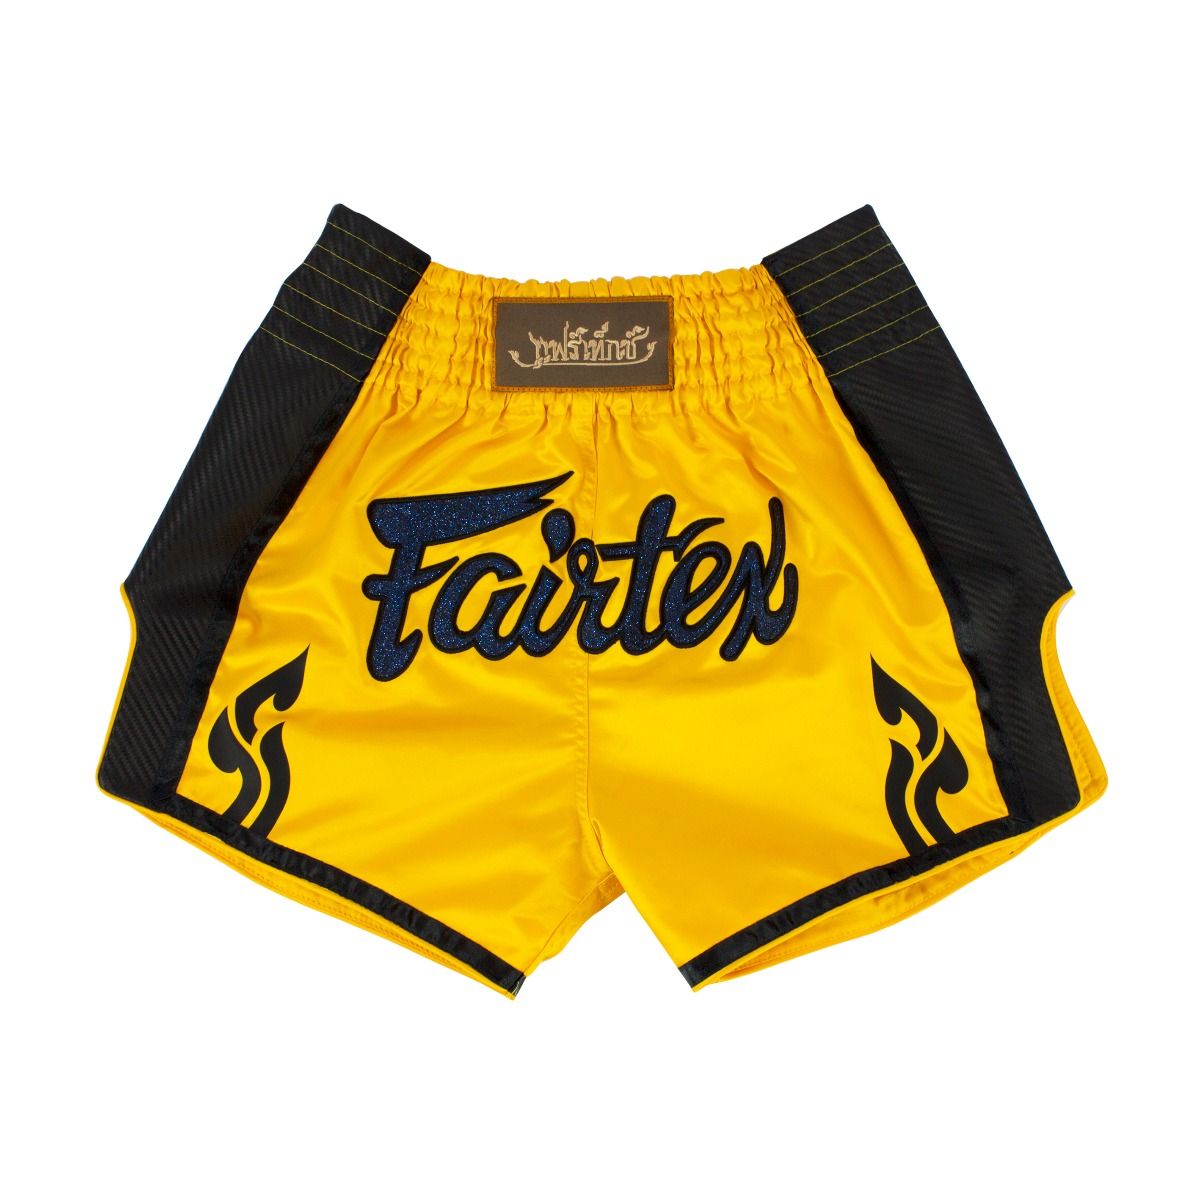 FAIRTEX Slim Cut Muaythai Shorts BS1701 - Yellow